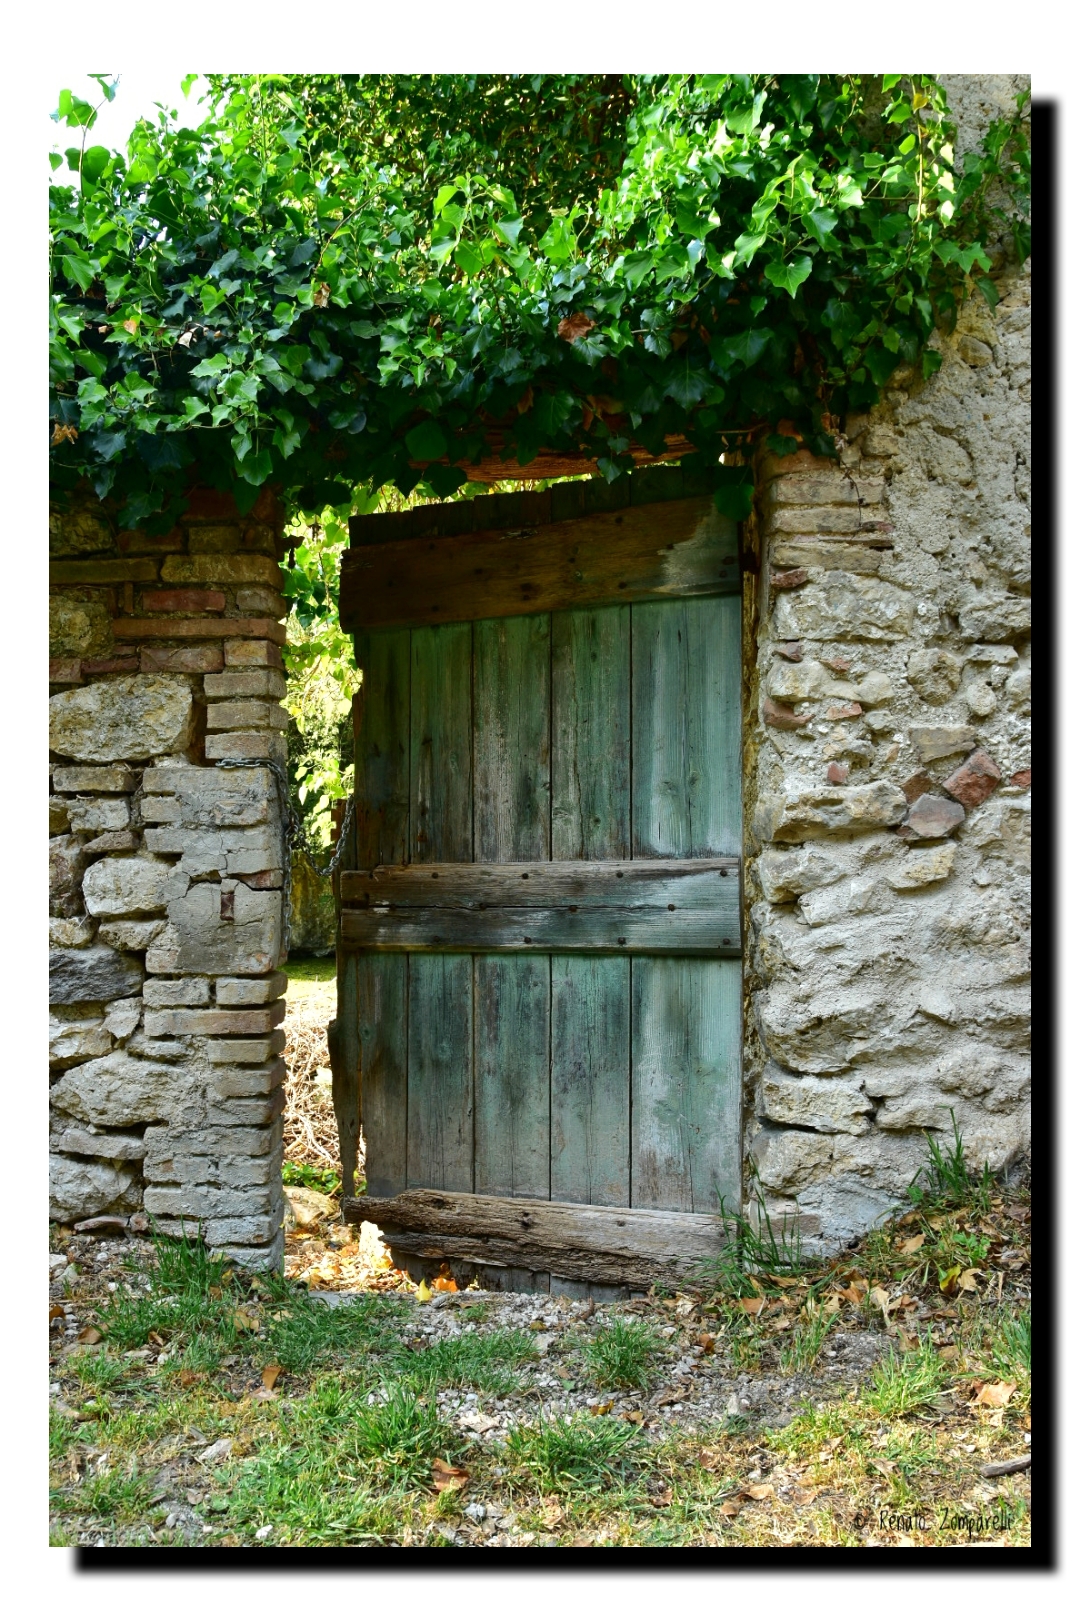 The garden door...